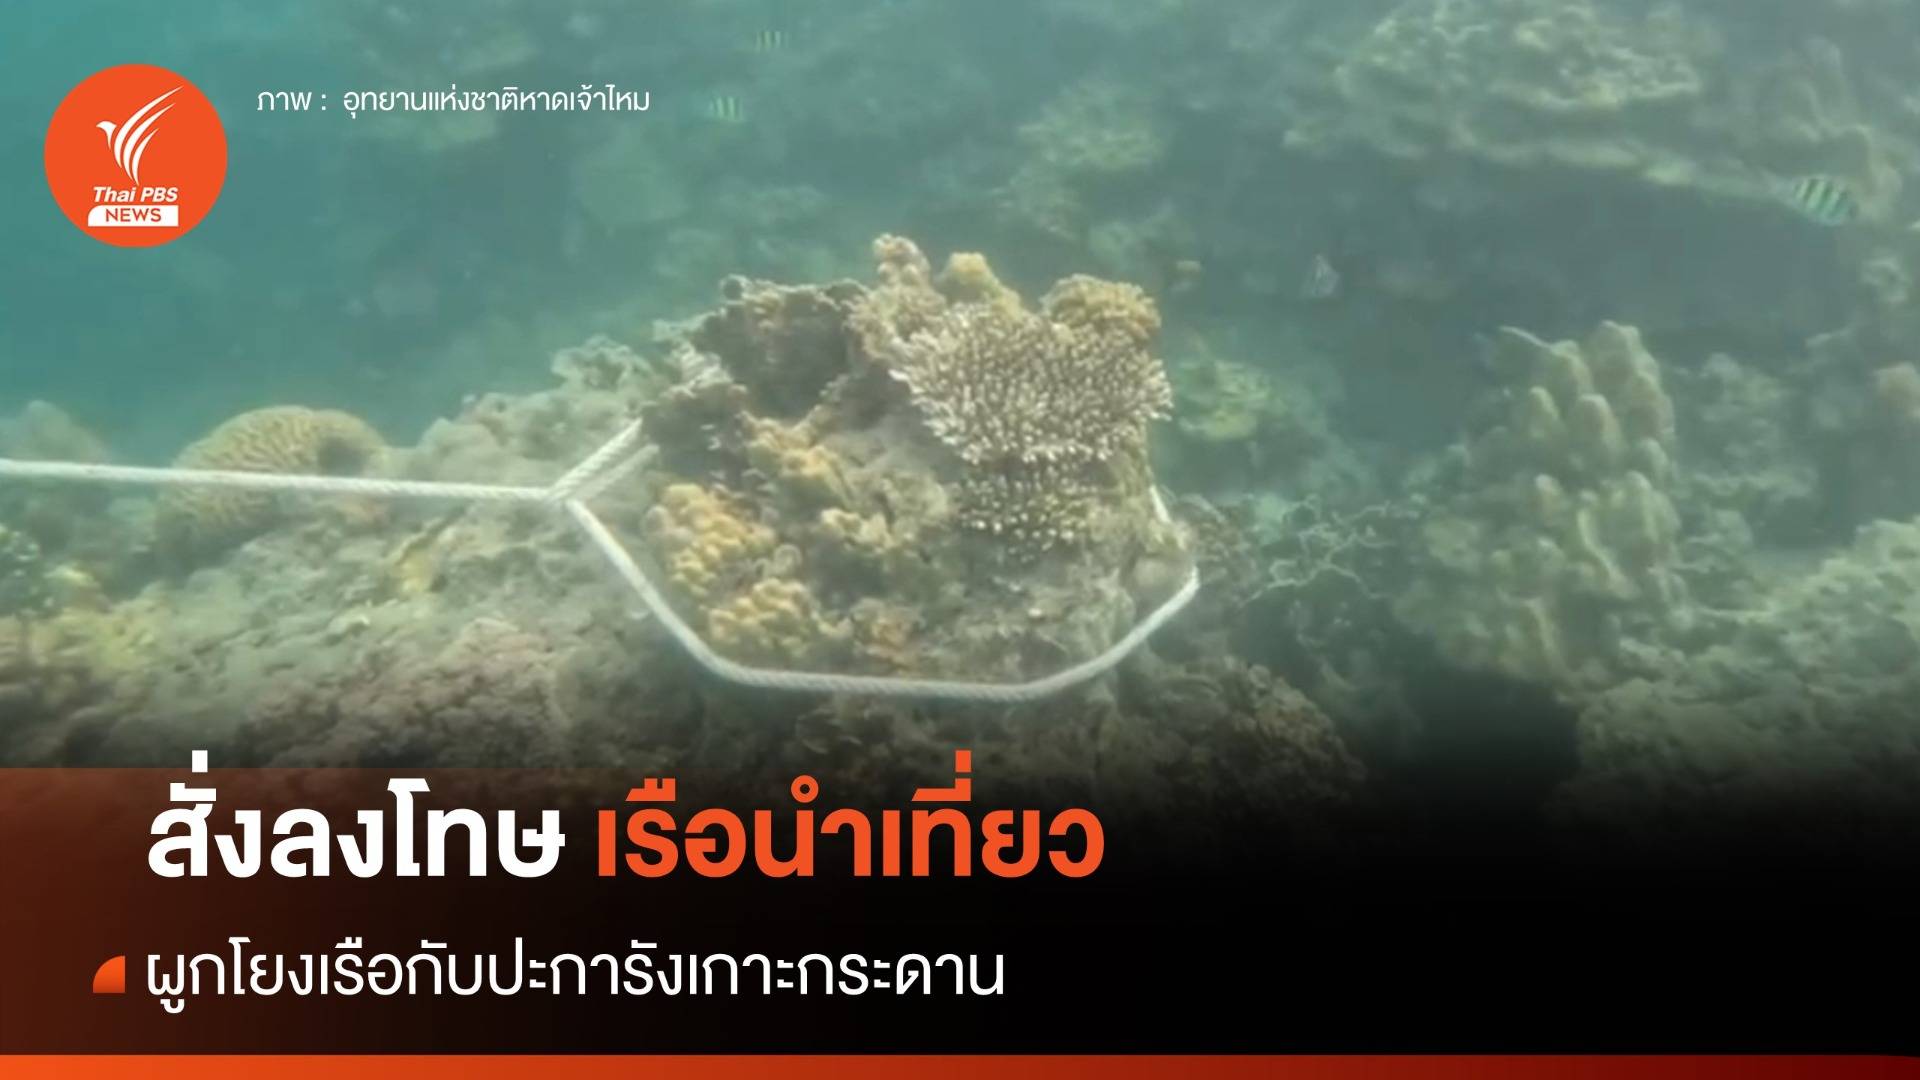 อธิบดีกรมอุทยานฯ สั่งลงโทษเรือนำเที่ยวผูกโยงเรือกับปะการัง